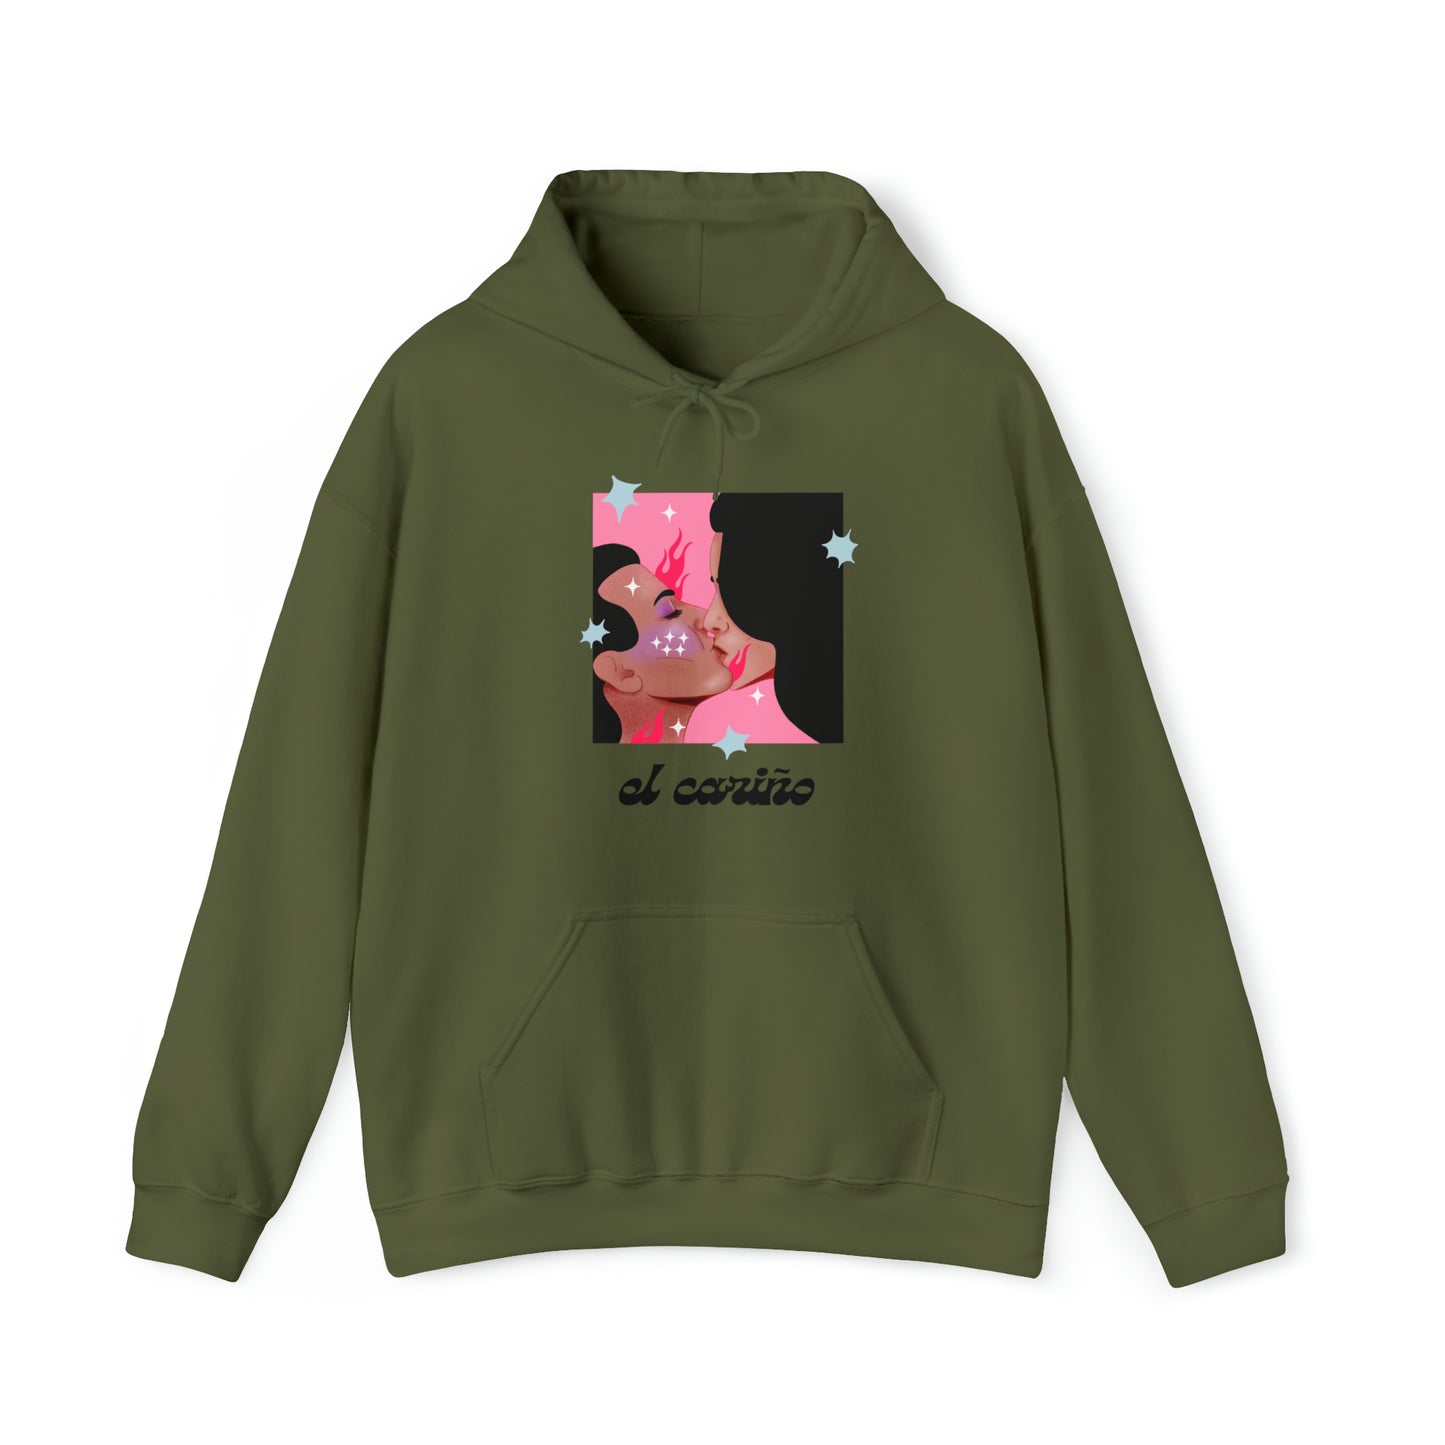 El Cariño hoodie